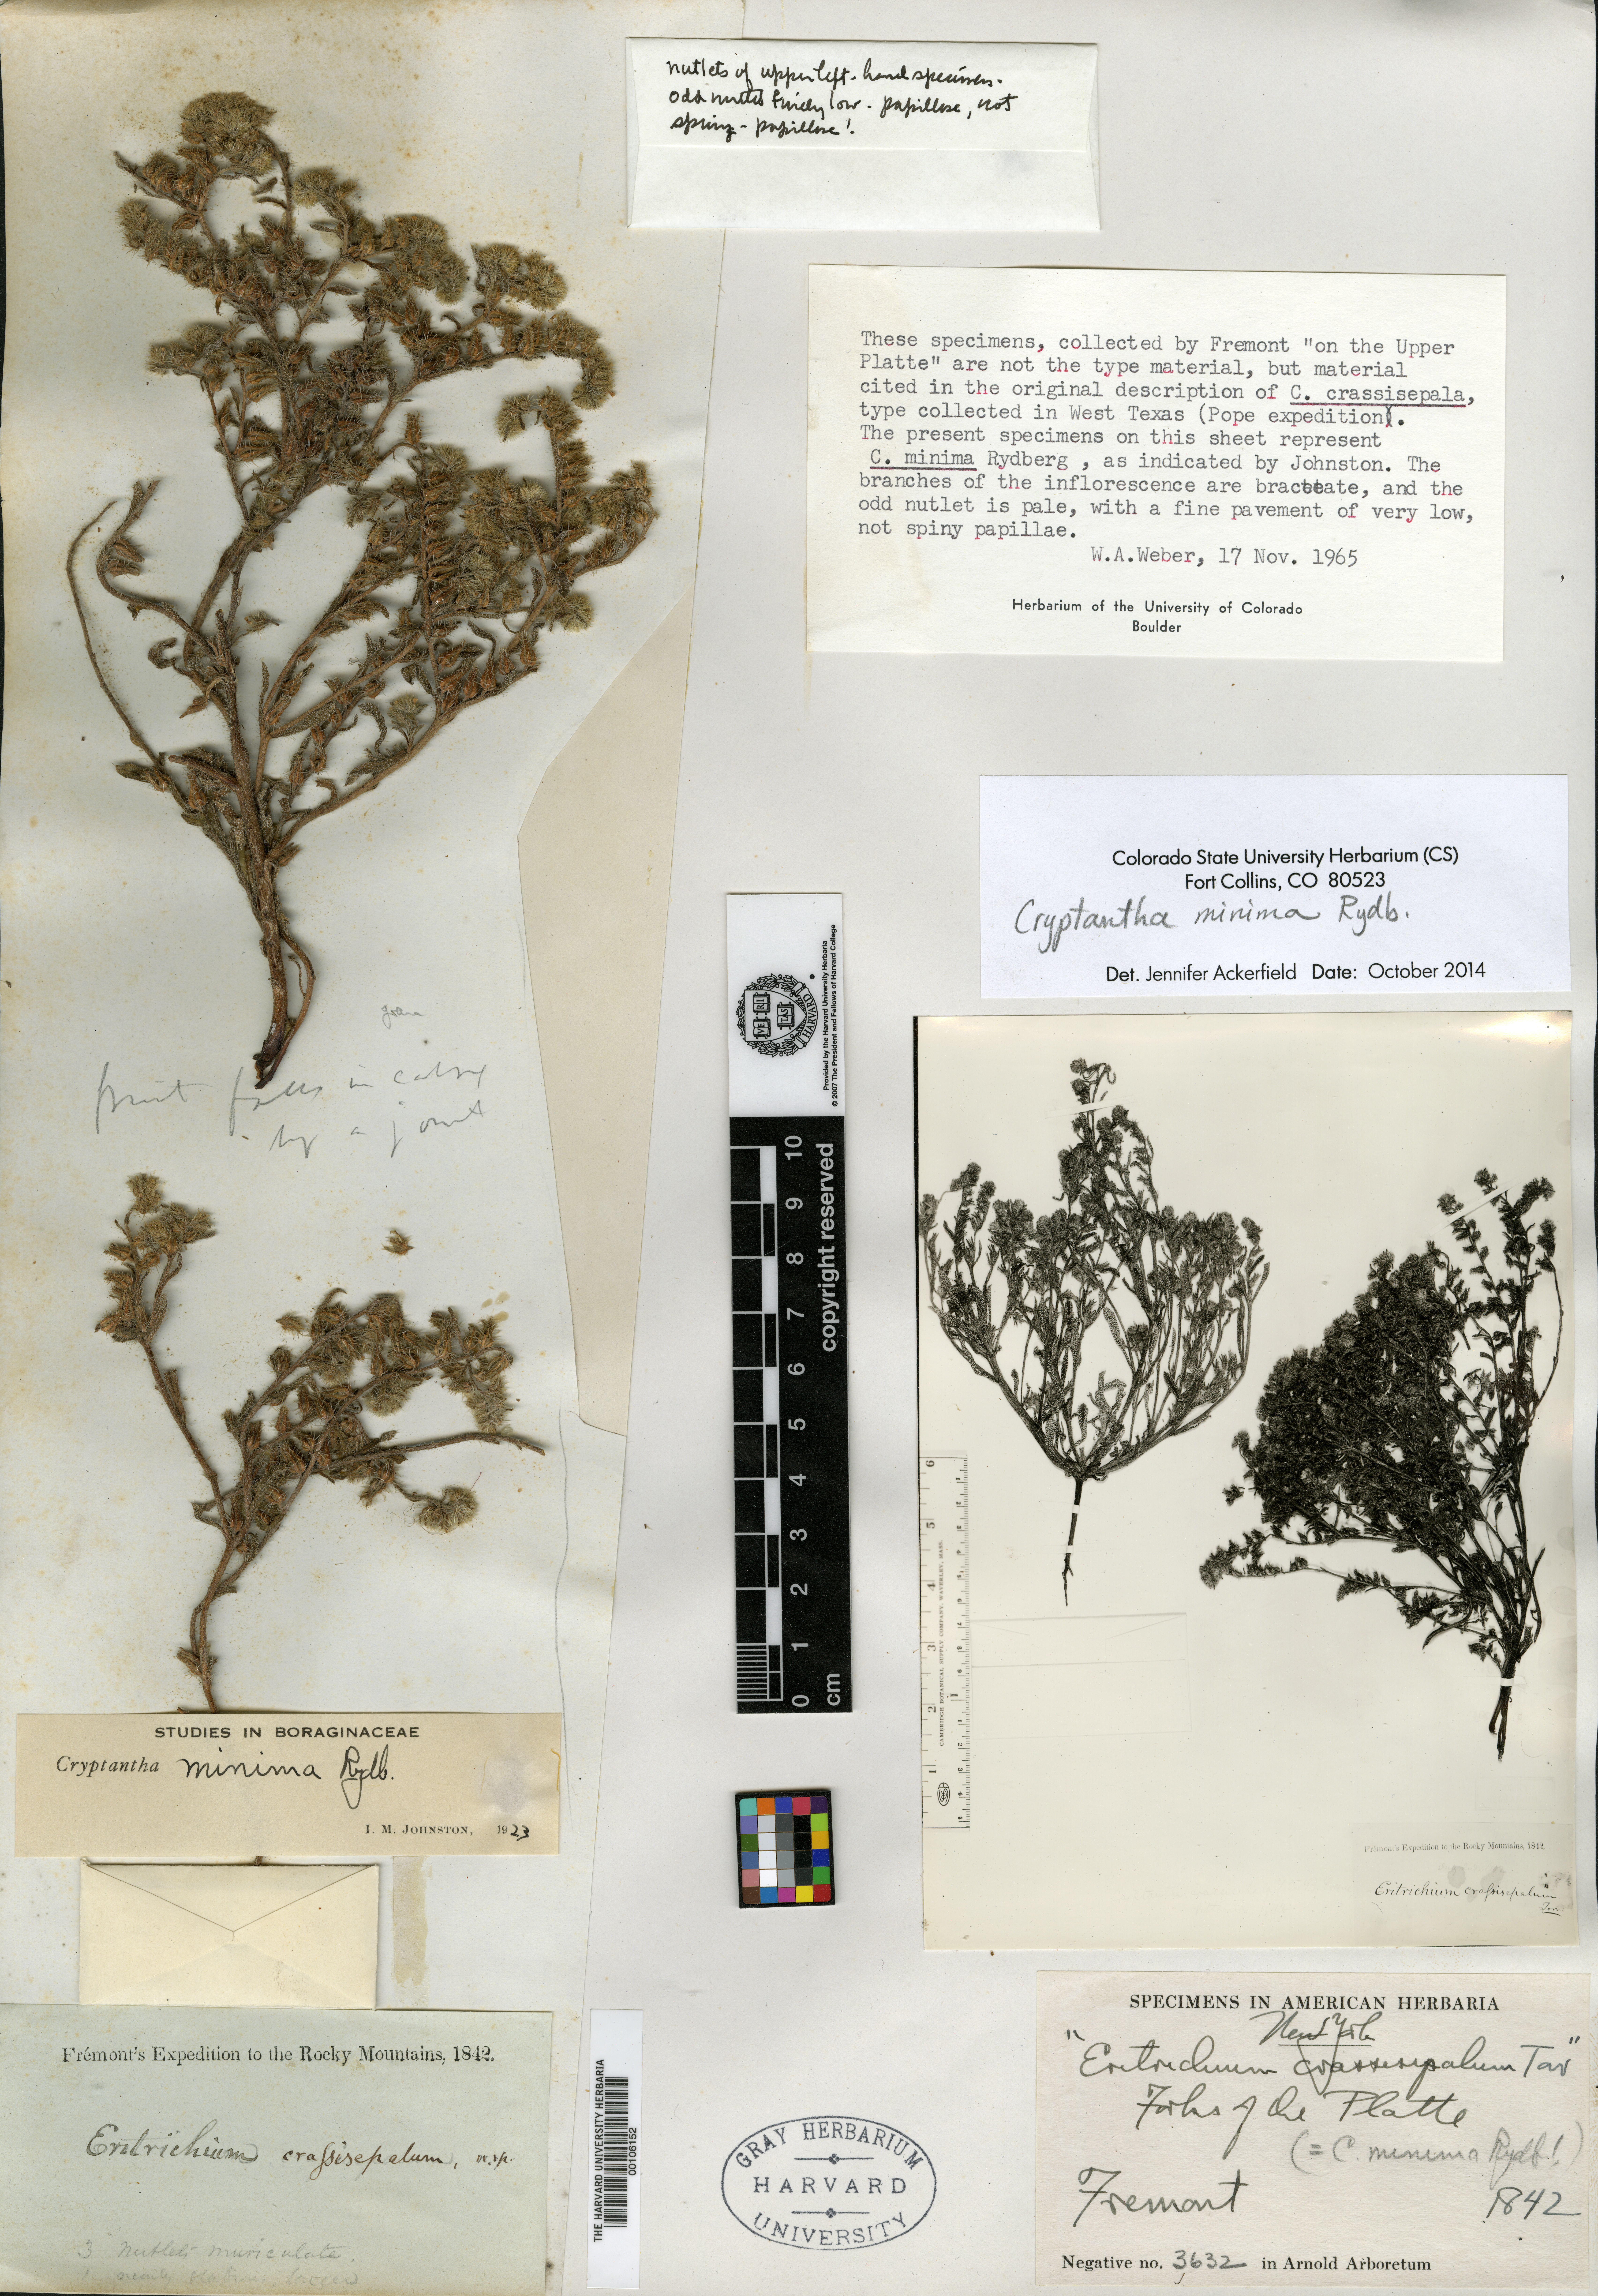 Eritrichium crassisepalum image